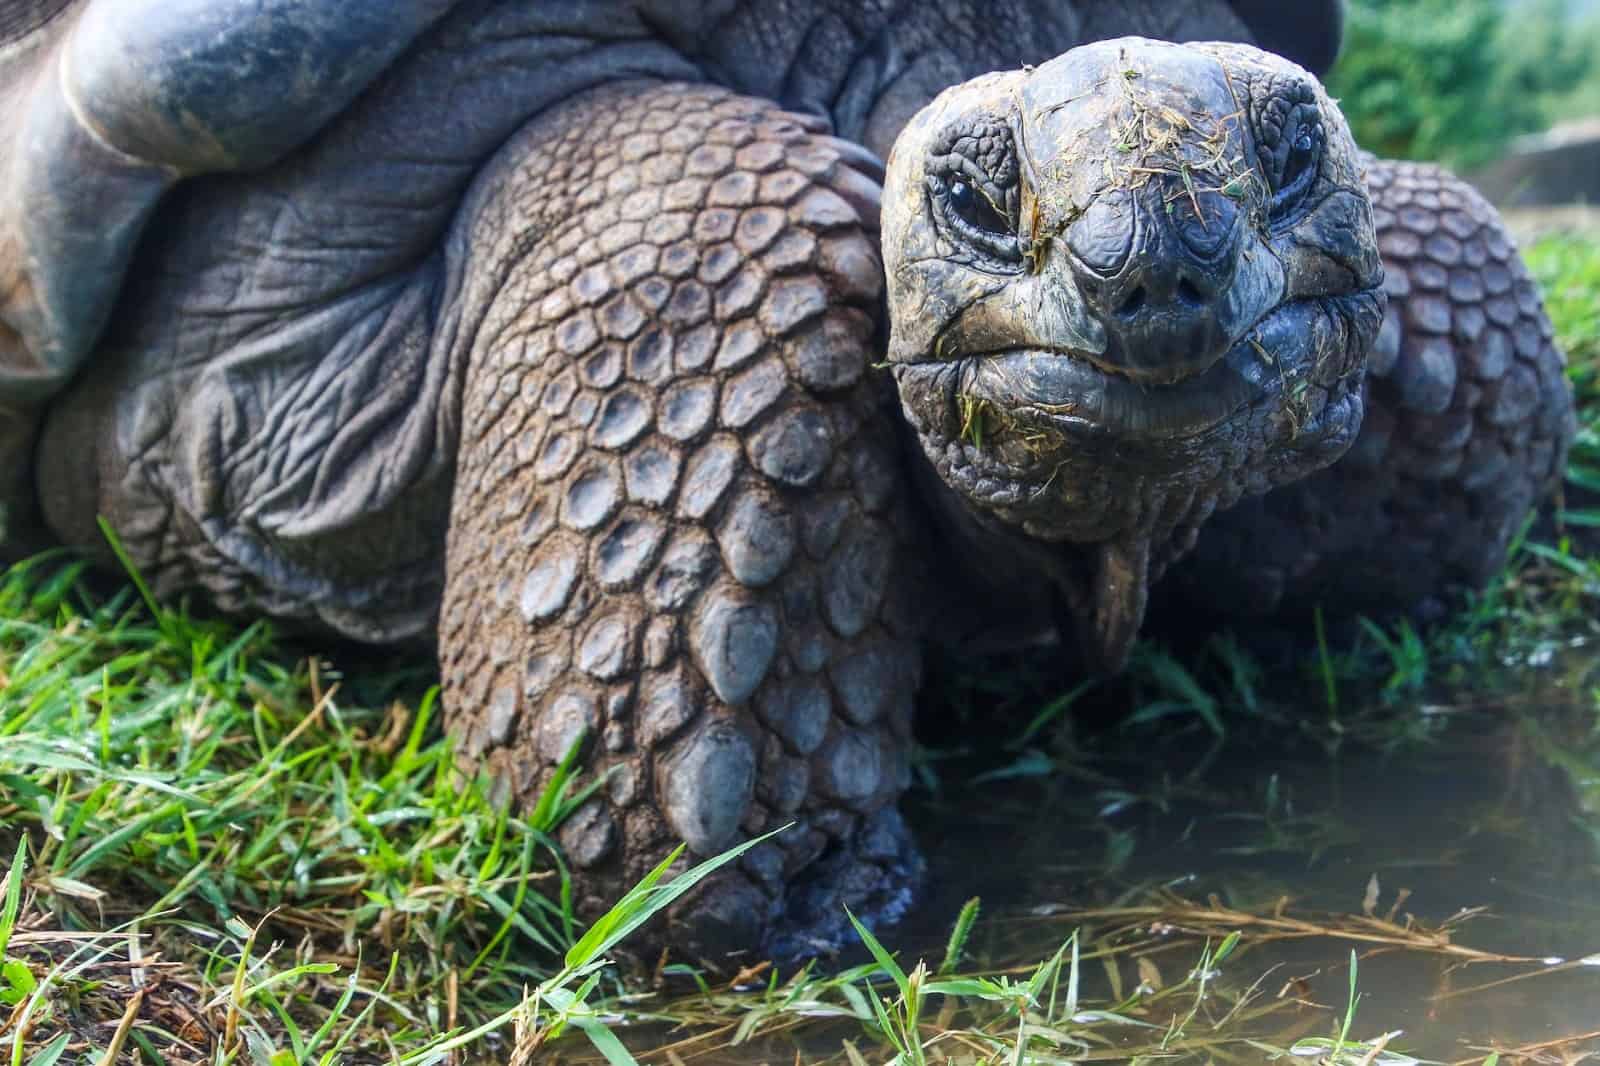 why do tortoises live so long